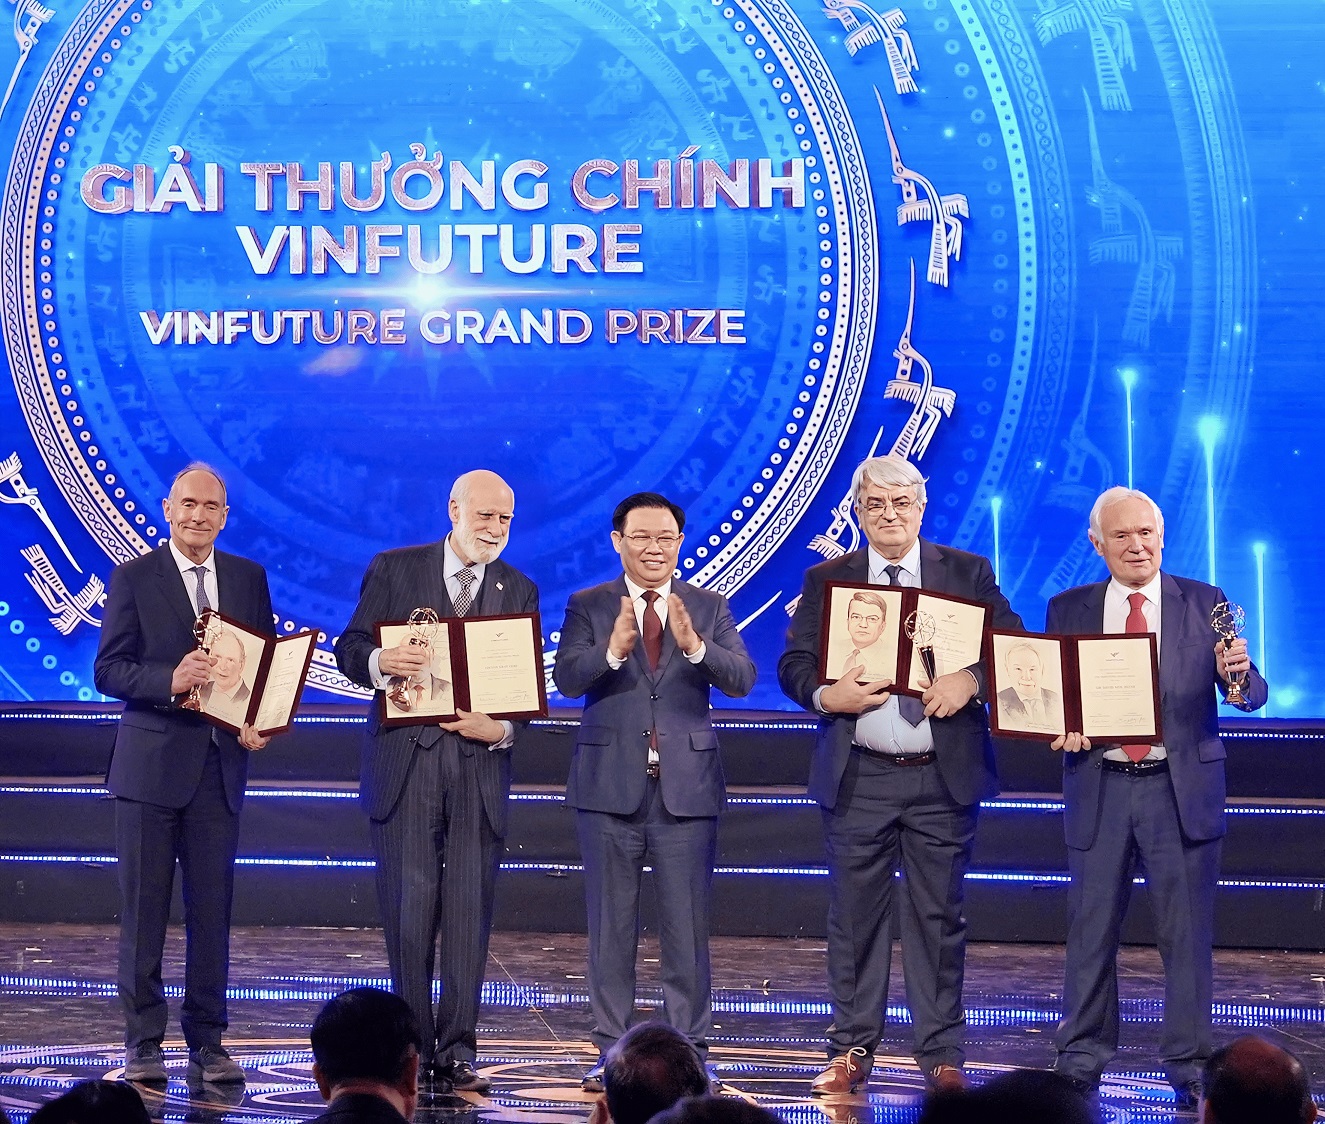 Các nhà khoa học với những phát minh đột phá trong việc kết nối công nghệ mạng toàn cầu nhận Giải thưởng Chính VinFuture 2022